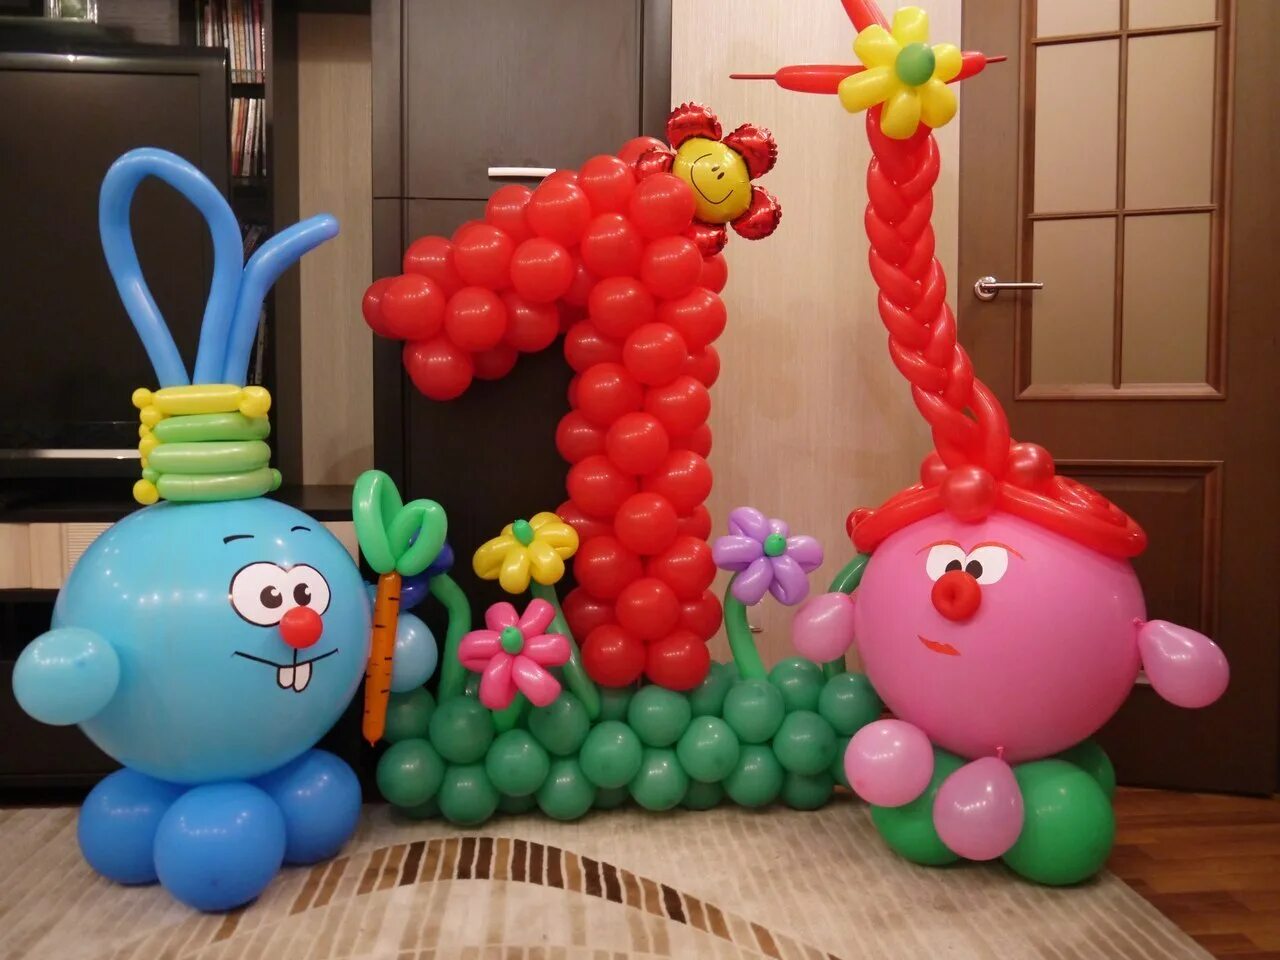 3 из воздушных шаров. Фигуры из шаров. Фигуры из воздушных шаров. Фигуры из воздушных шариков. Фигурки из шаров на день рождения.